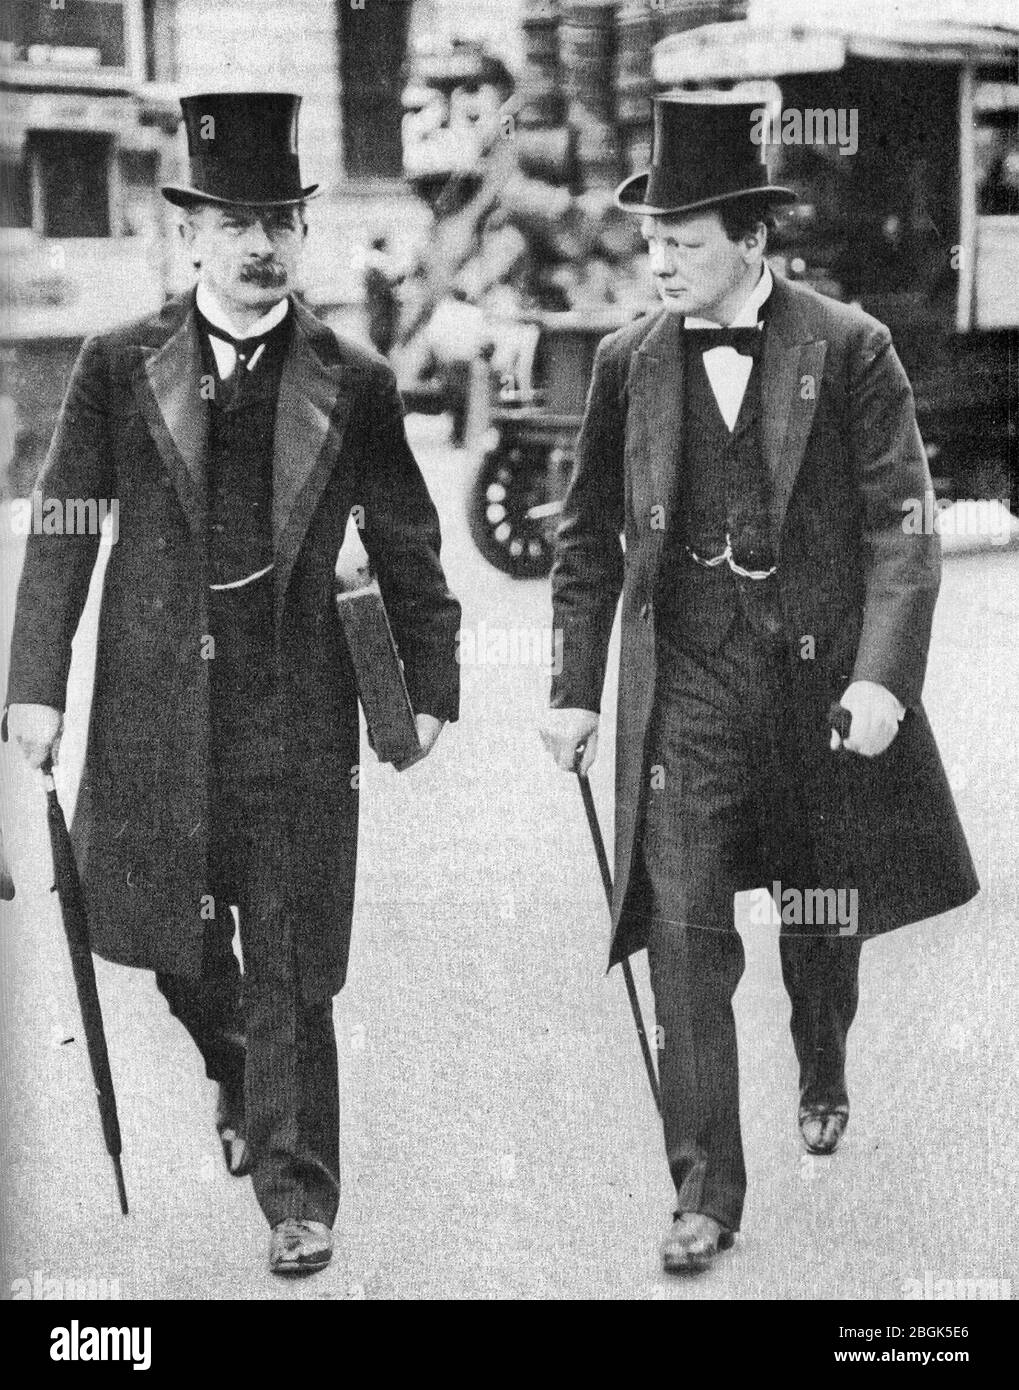 Los 'terribles gemelos' David Lloyd George y Winston Churchill en 1907 durante el pico de su 'fase radical' como reformadores sociales. Foto de stock